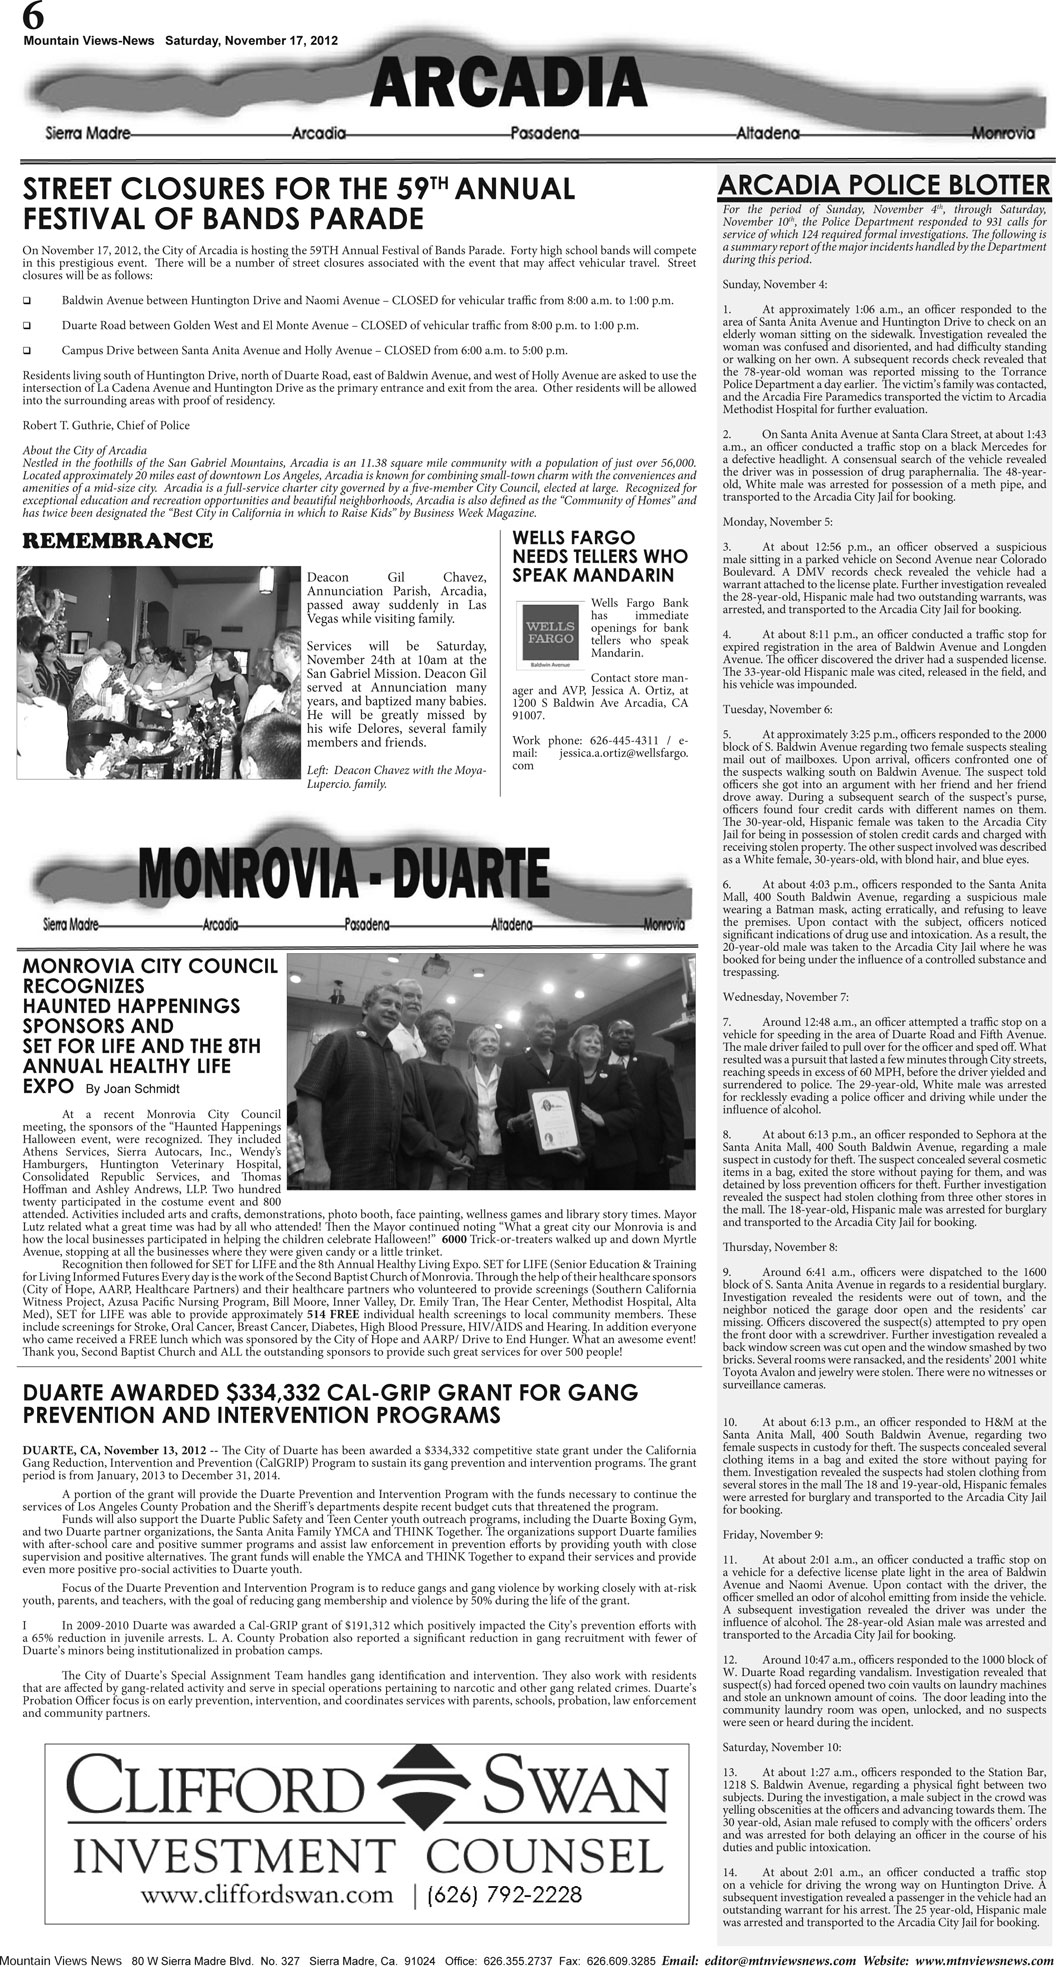 MVNews this week:  Page 6